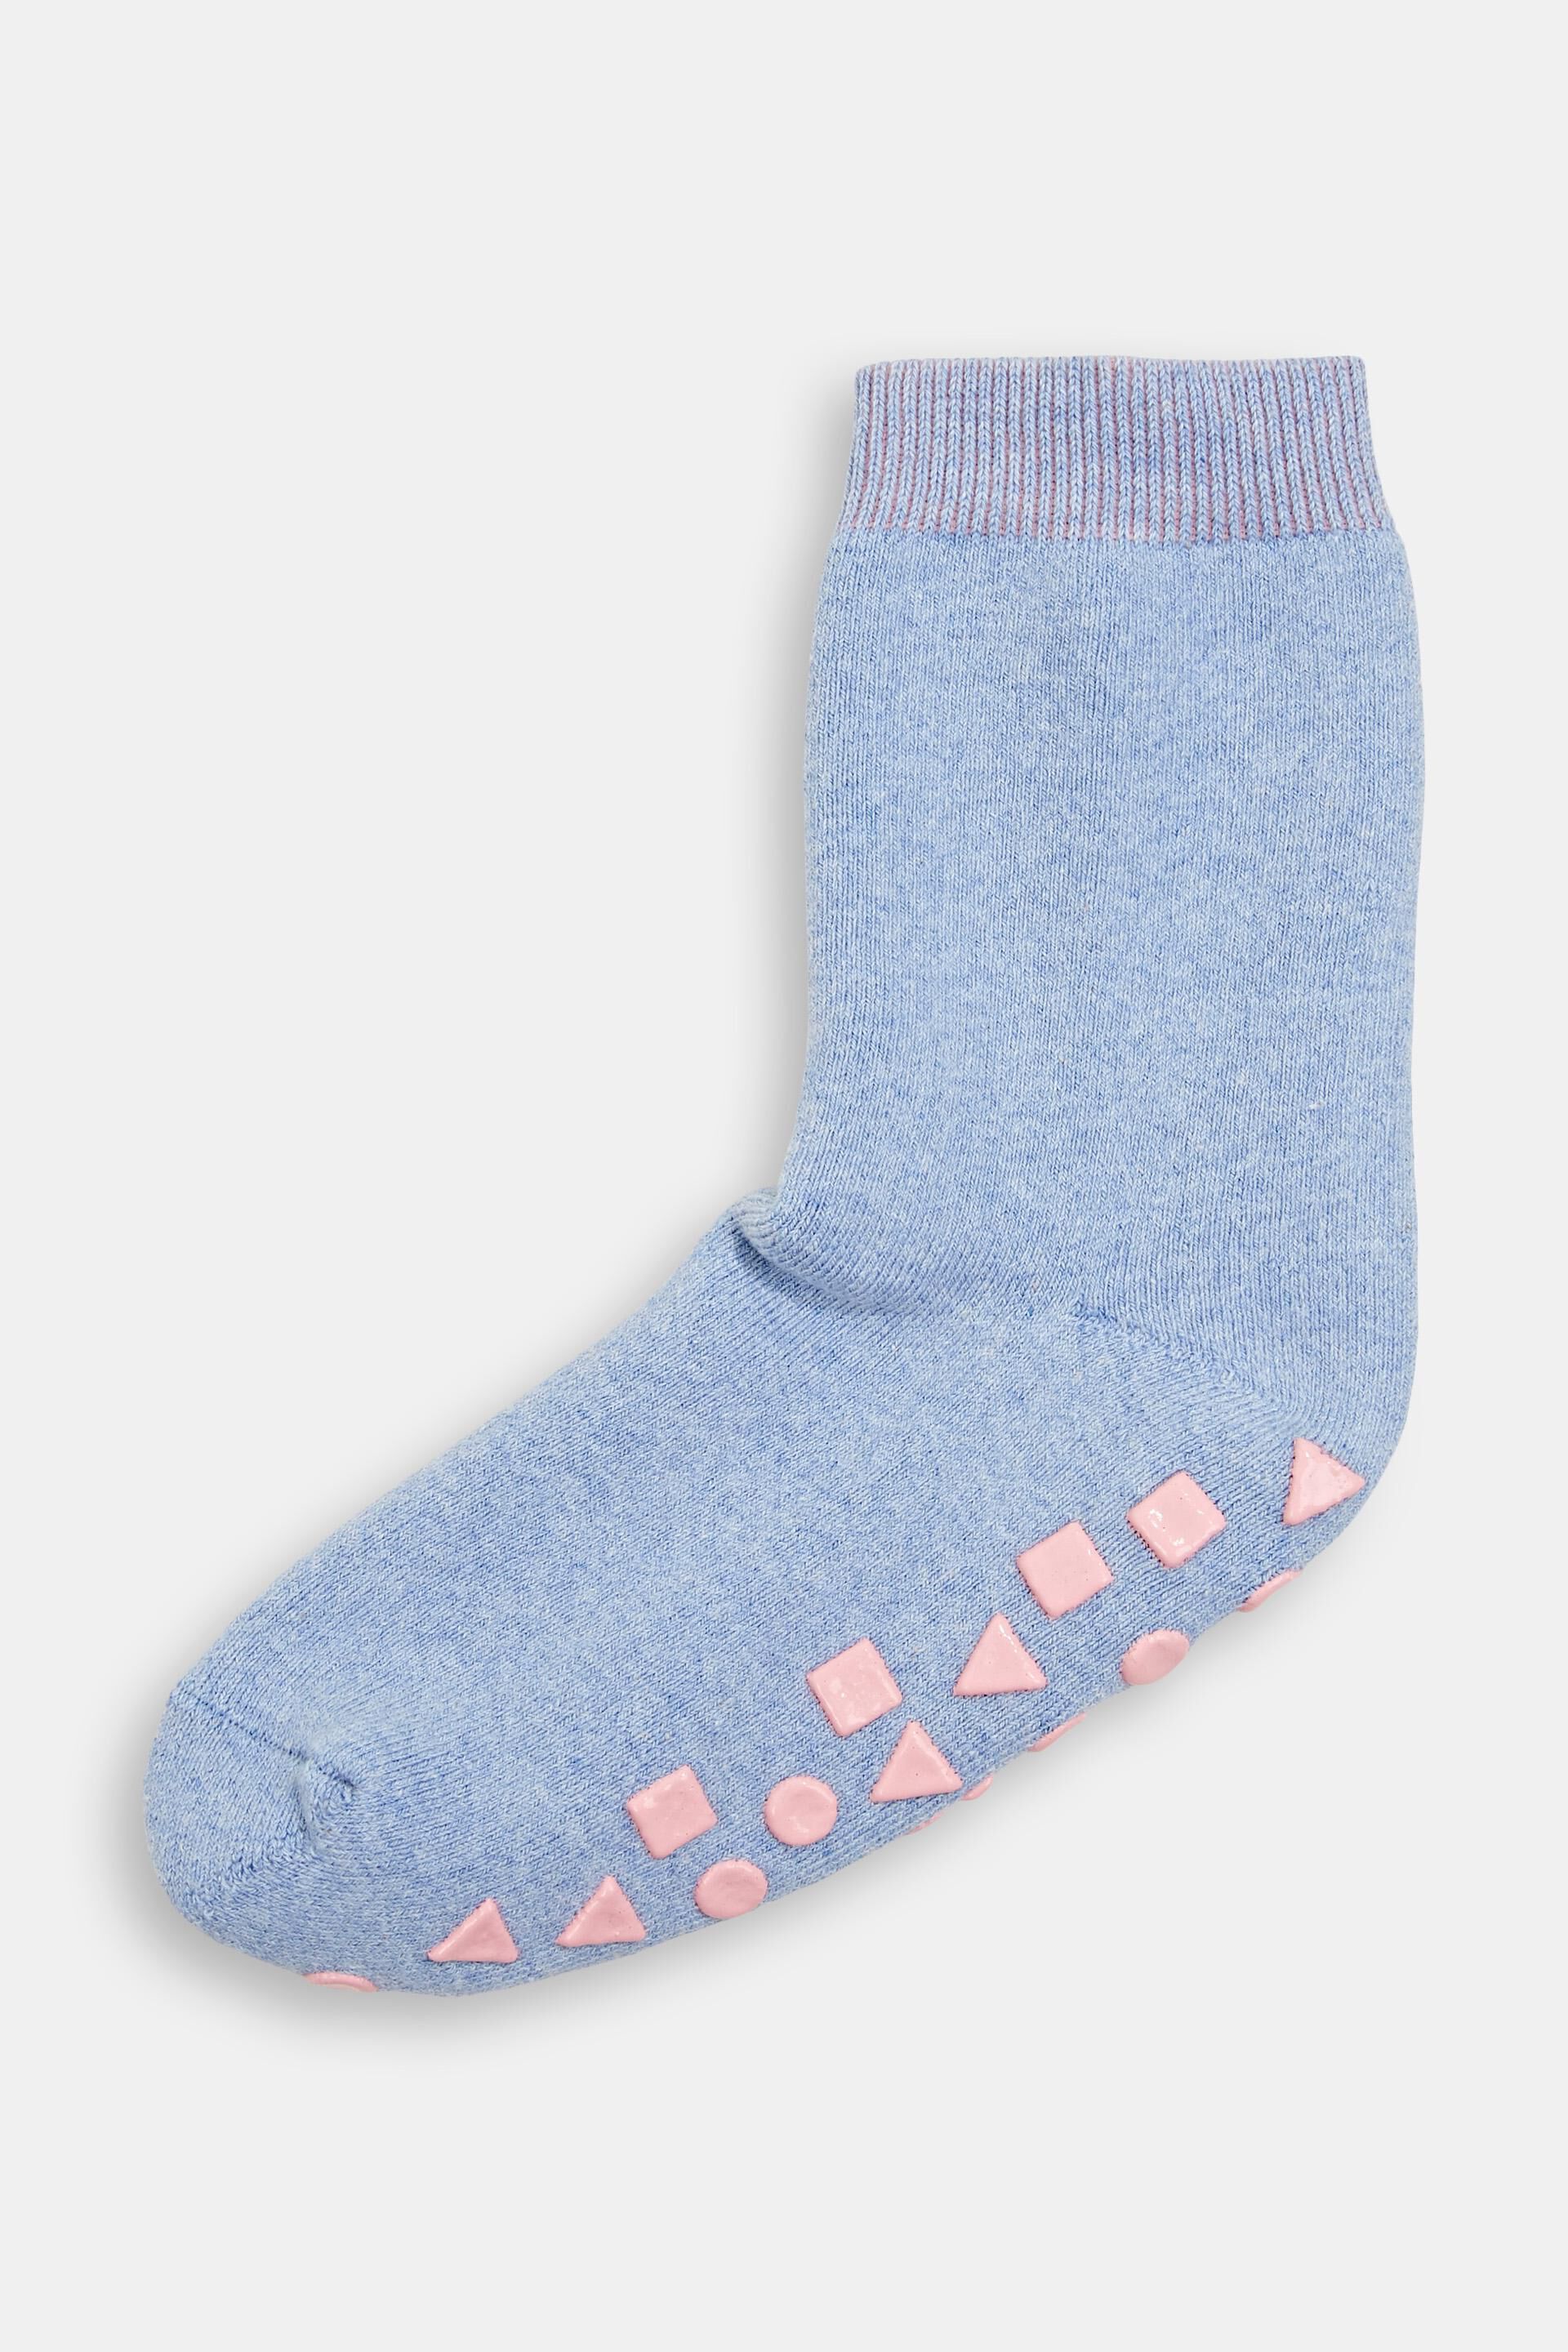 Esprit socks made Non-slip organic of blended cotton